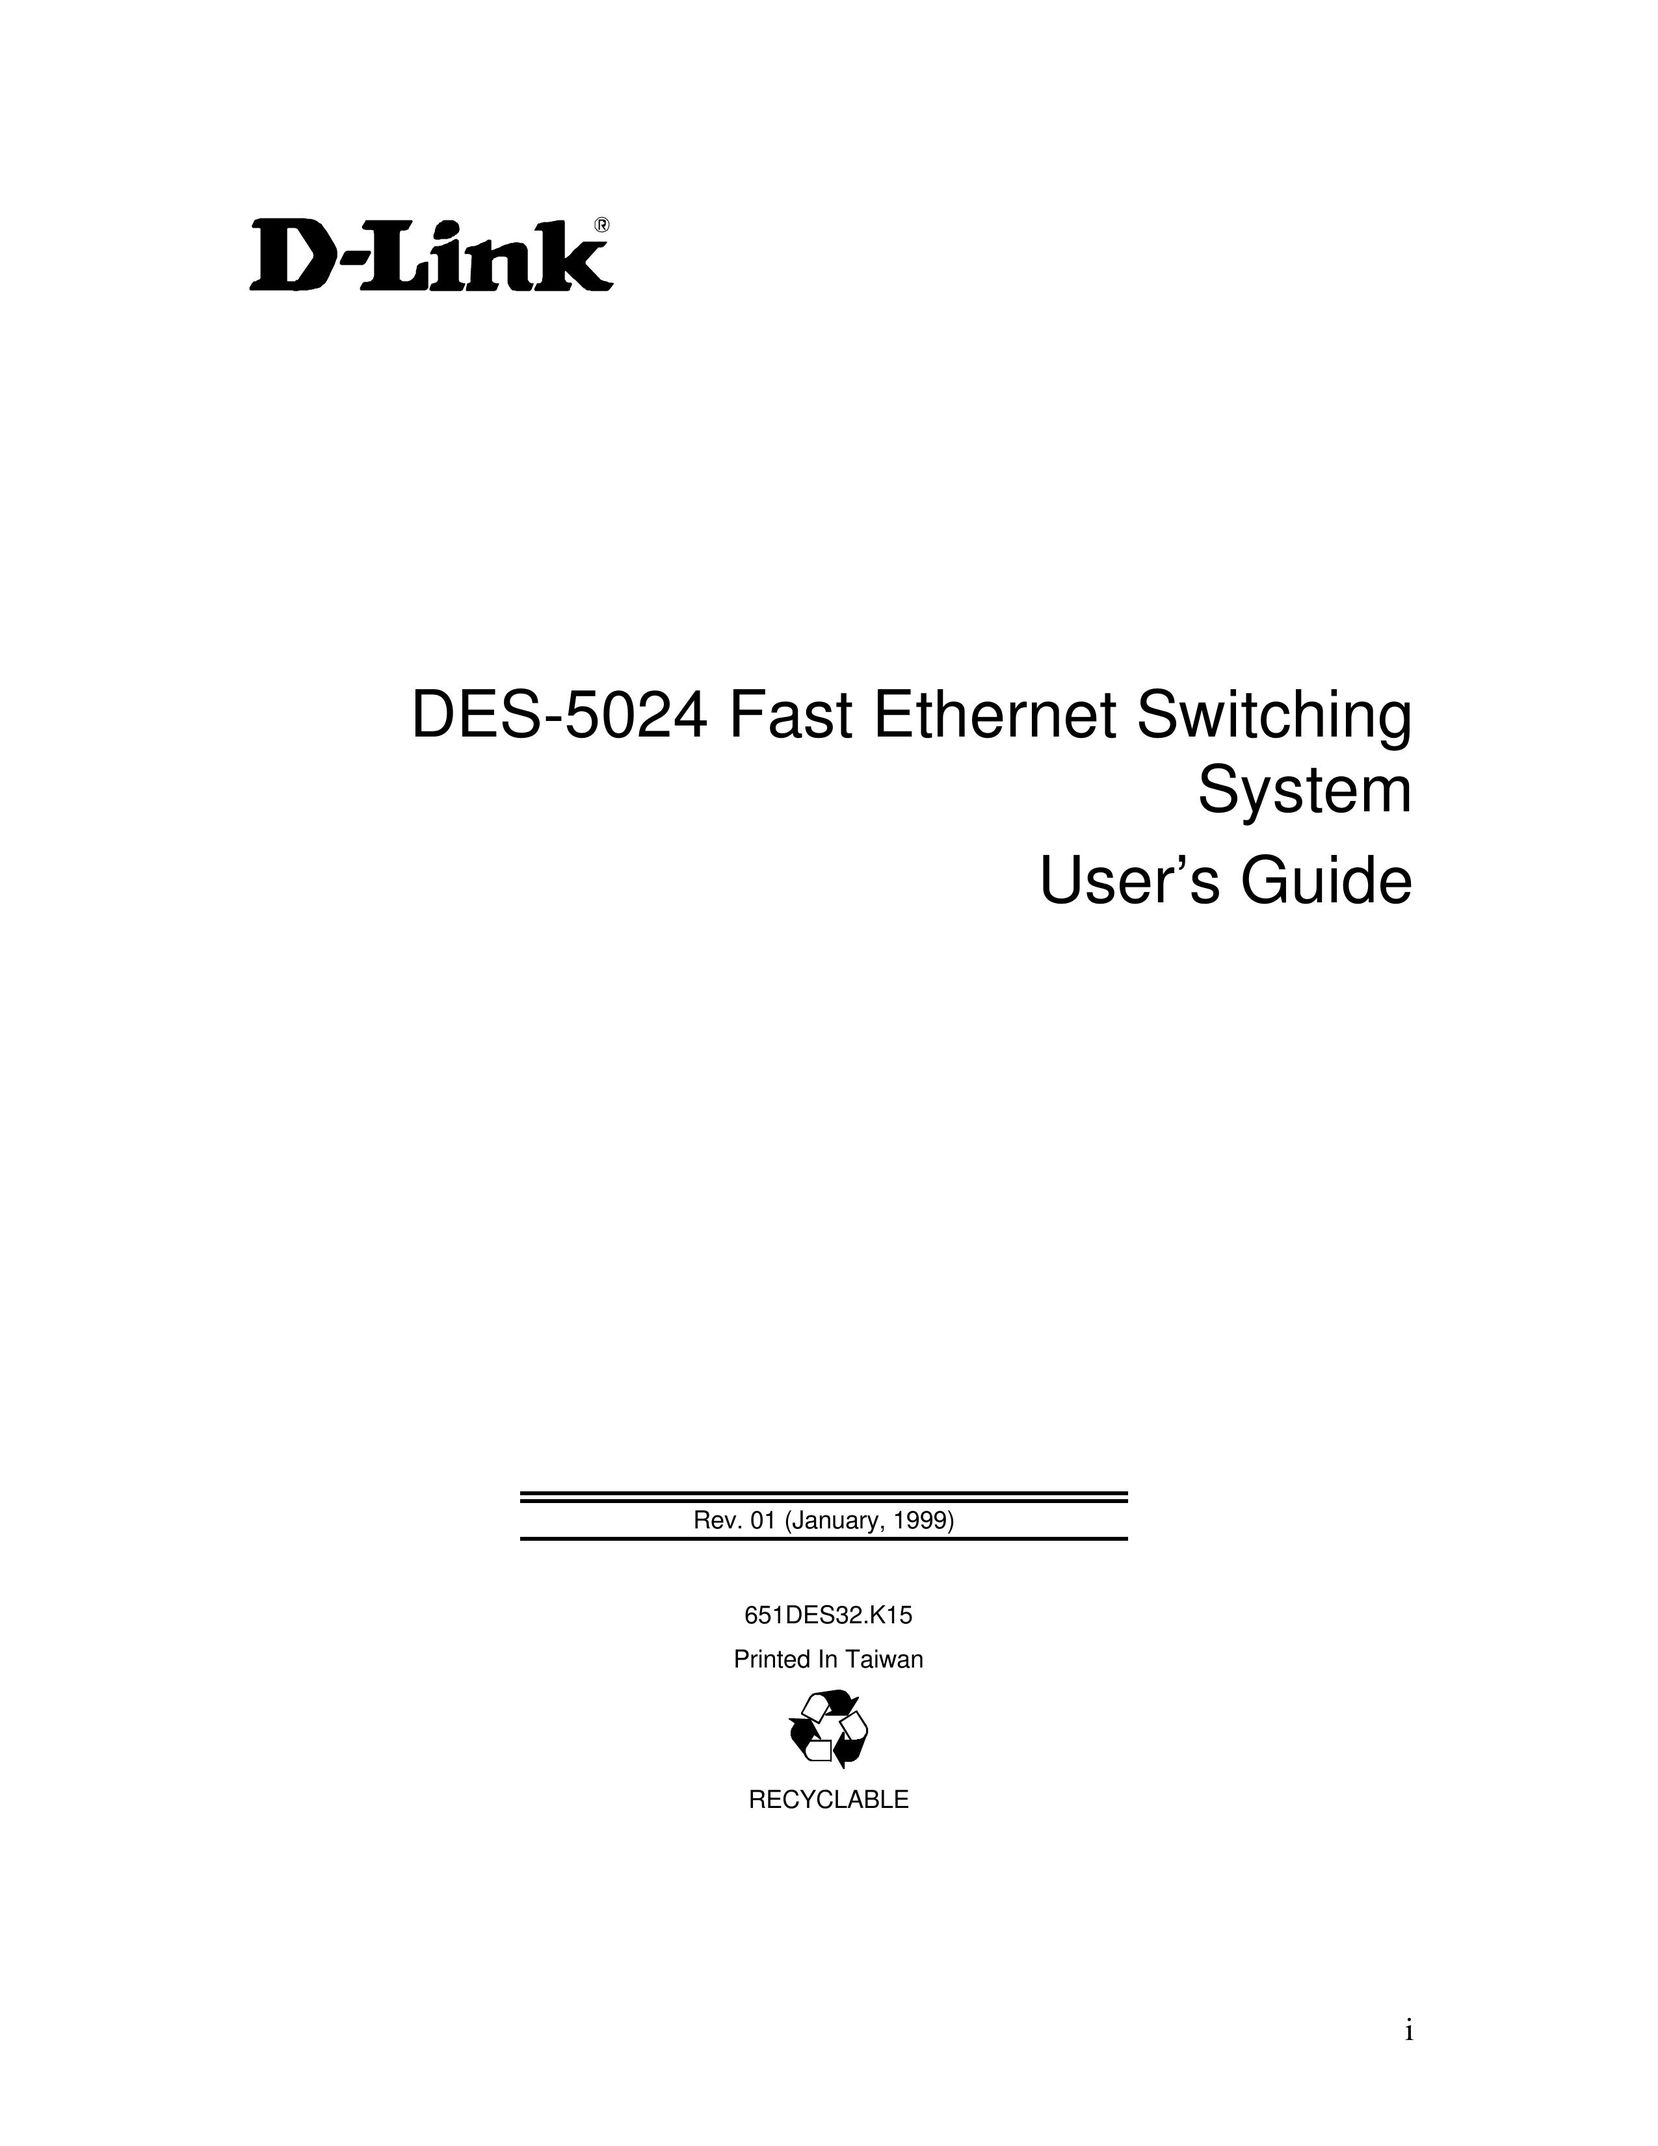 D-Link DES-5024 Network Card User Manual